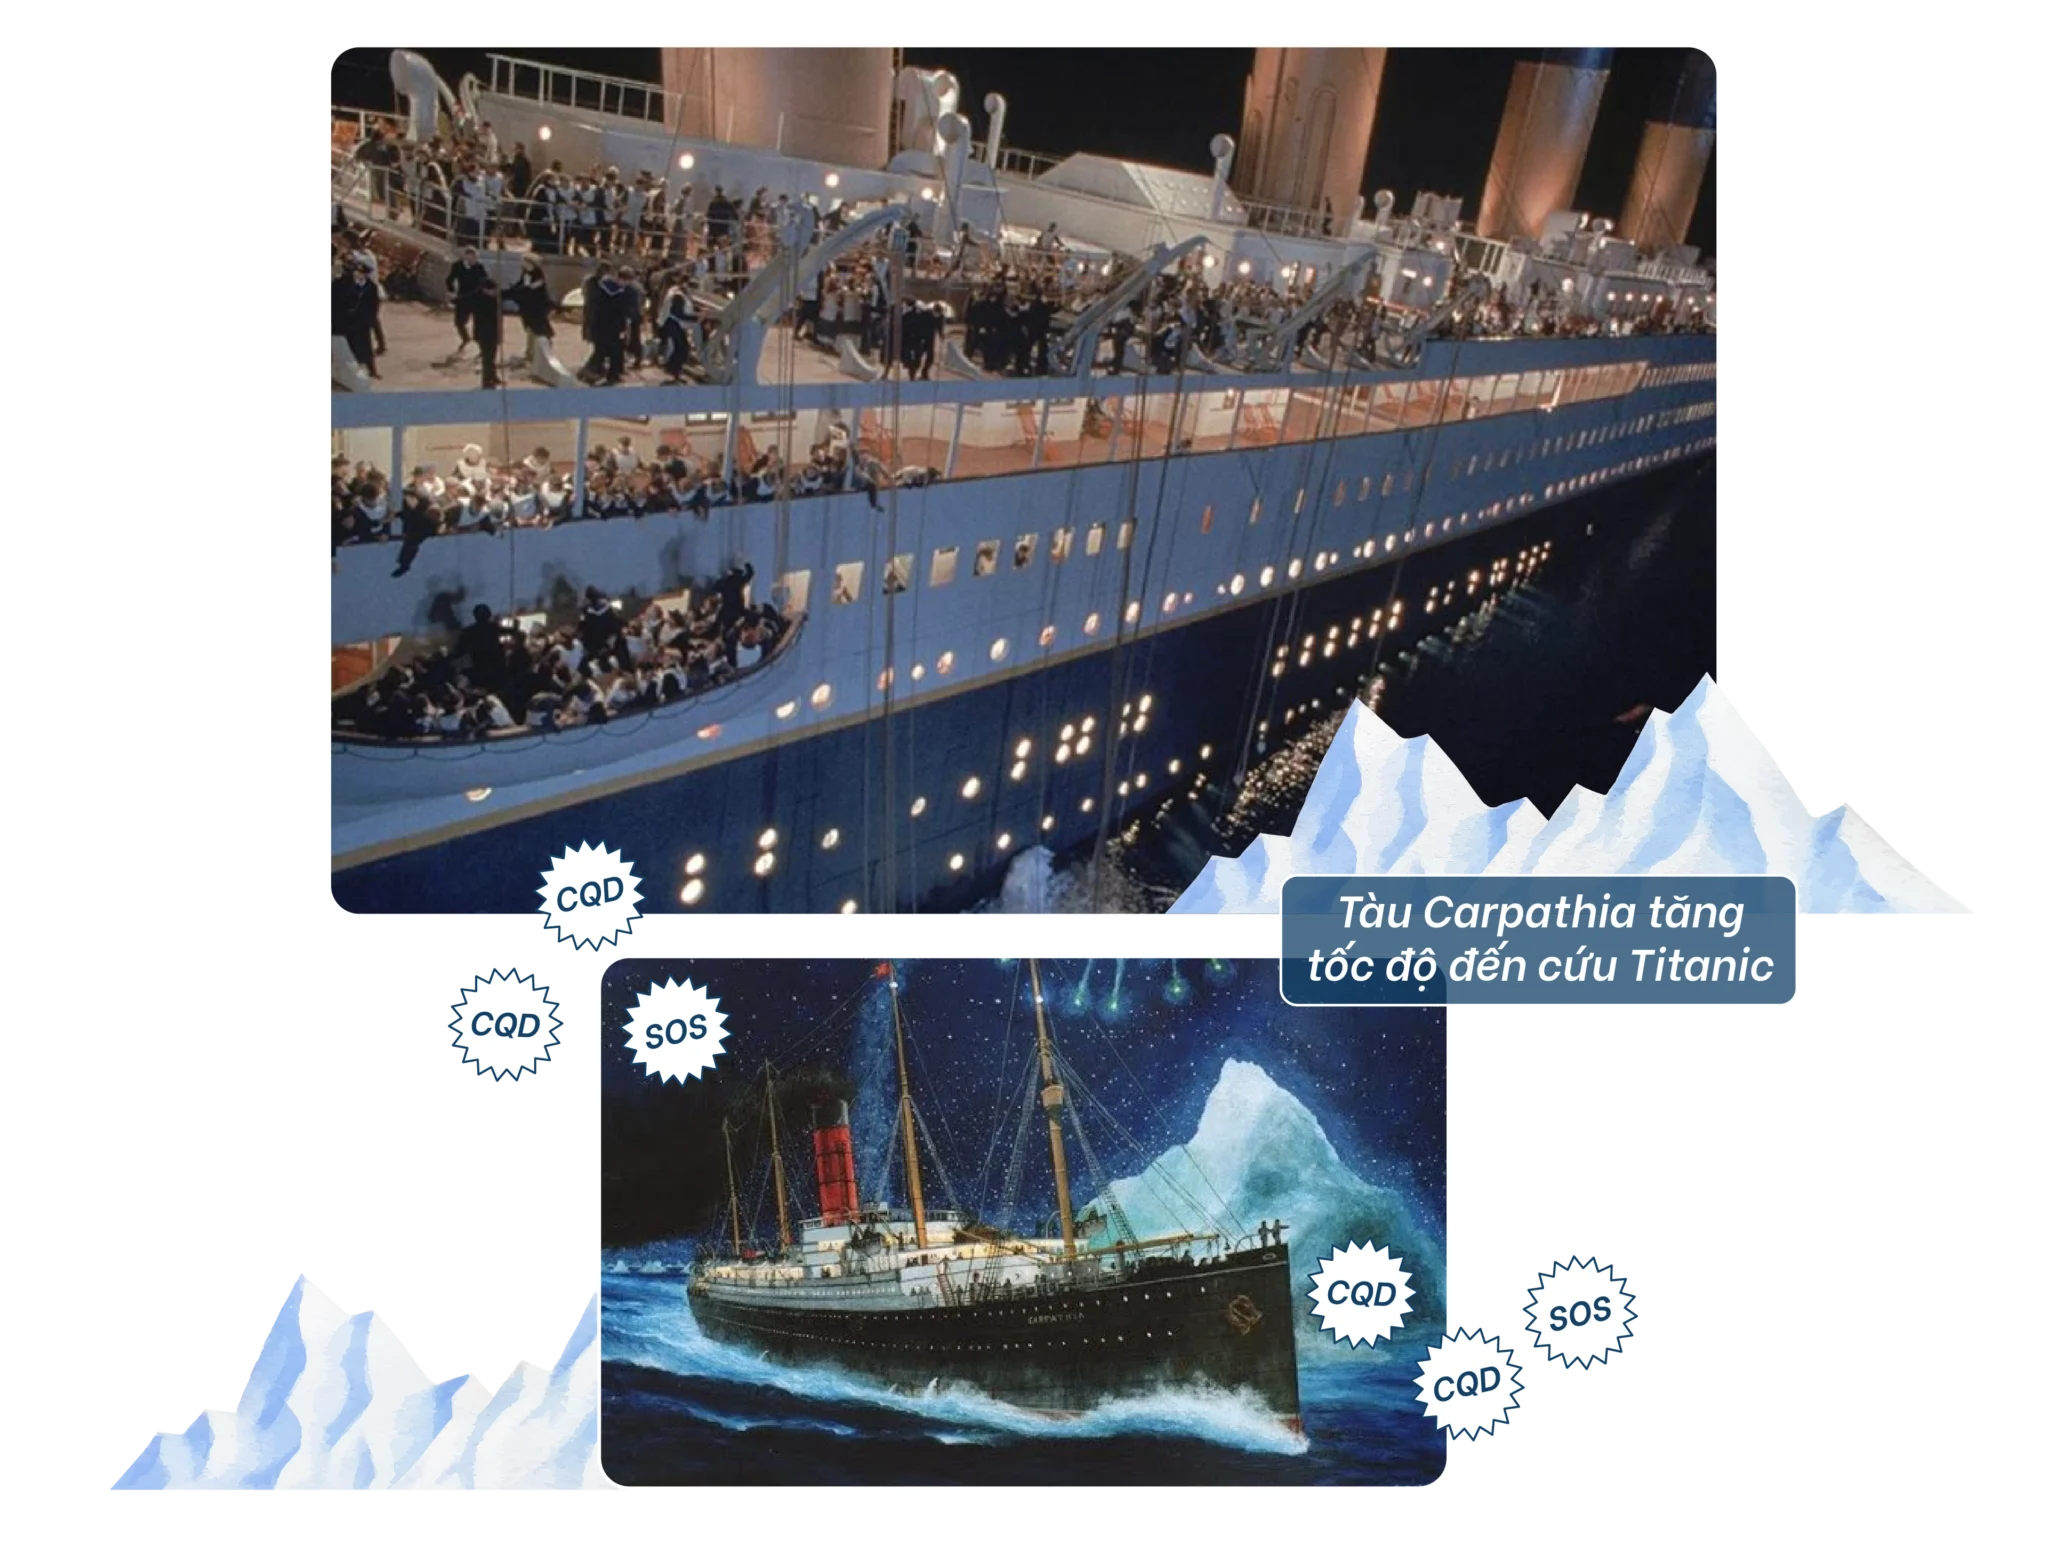 Tàu Carpathia đến cứu Titanic